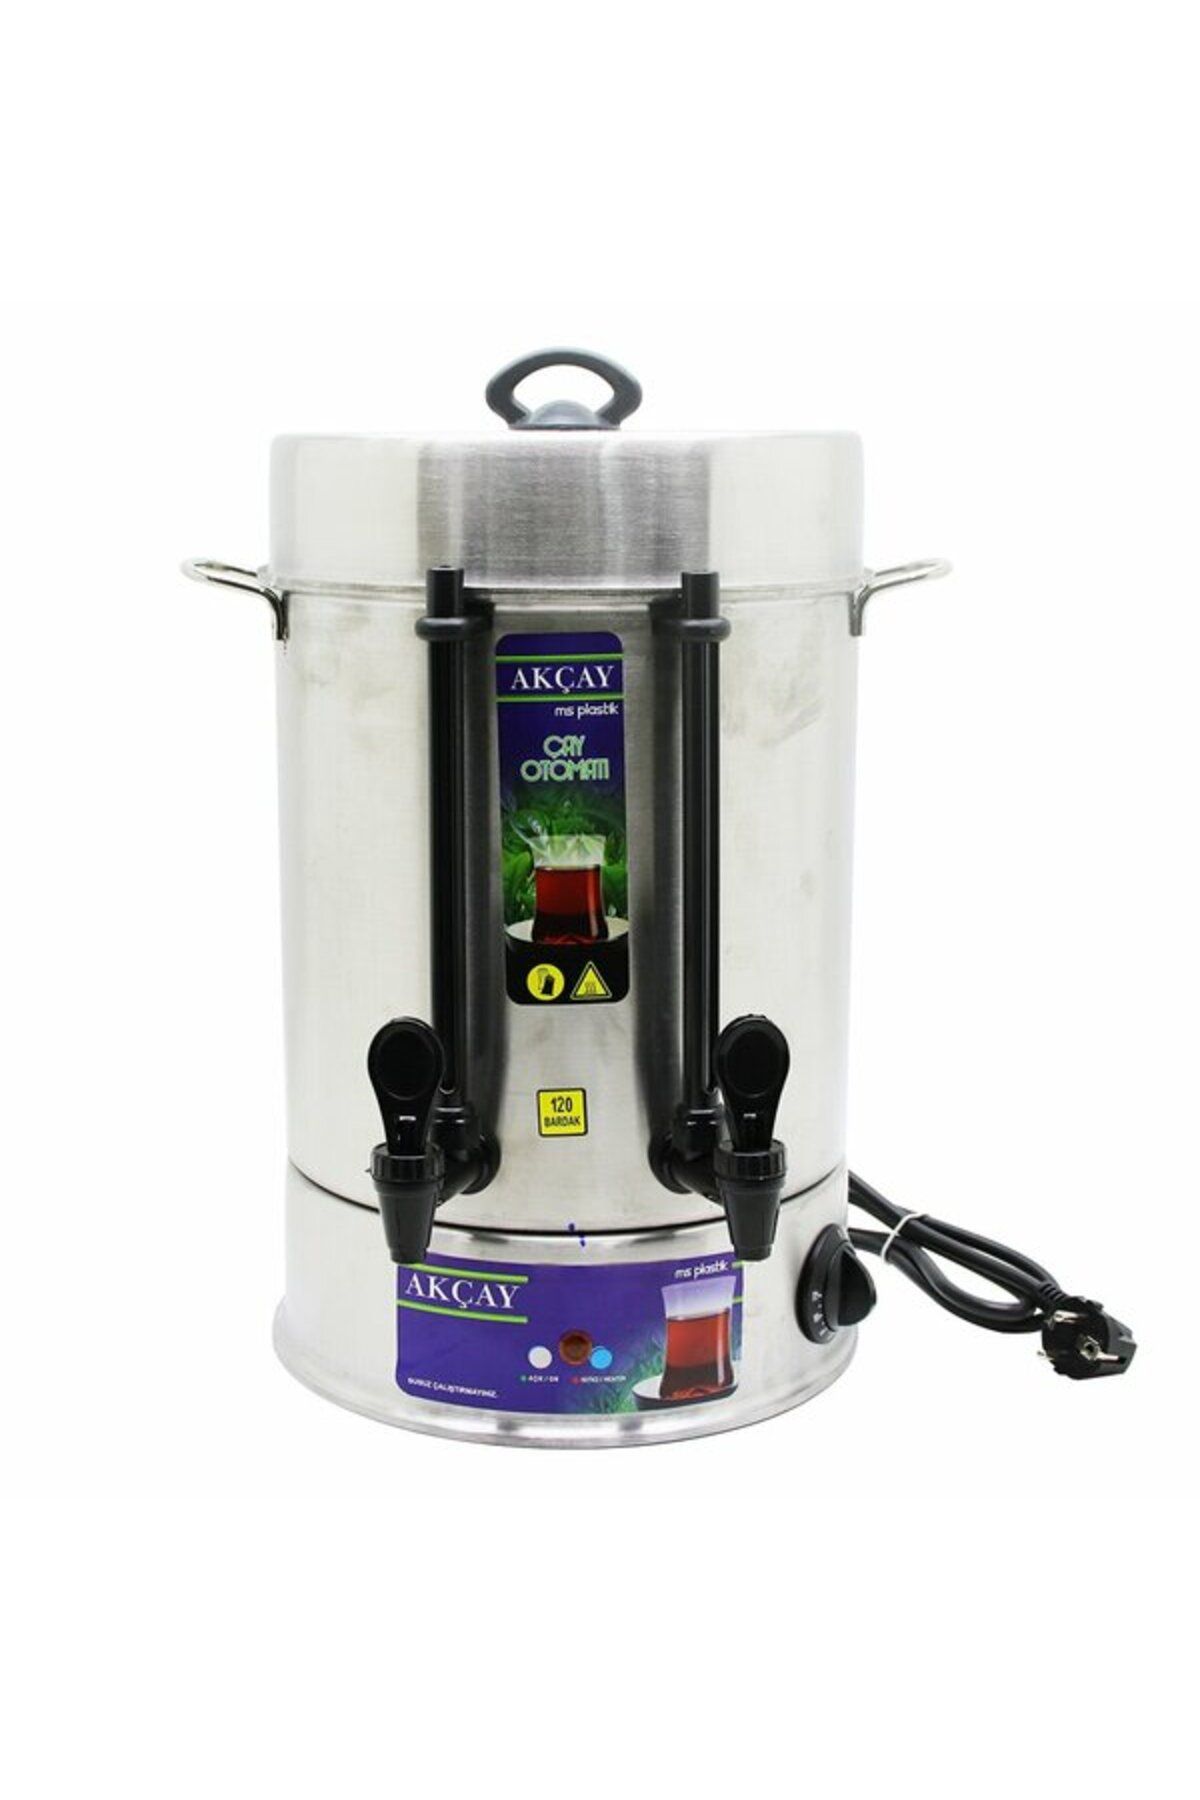 KAVACIK İTHALAT 120 Bardak Kapasiteli Çay Otomatı Semaver Elektrikli Çay Makinesi (4324)